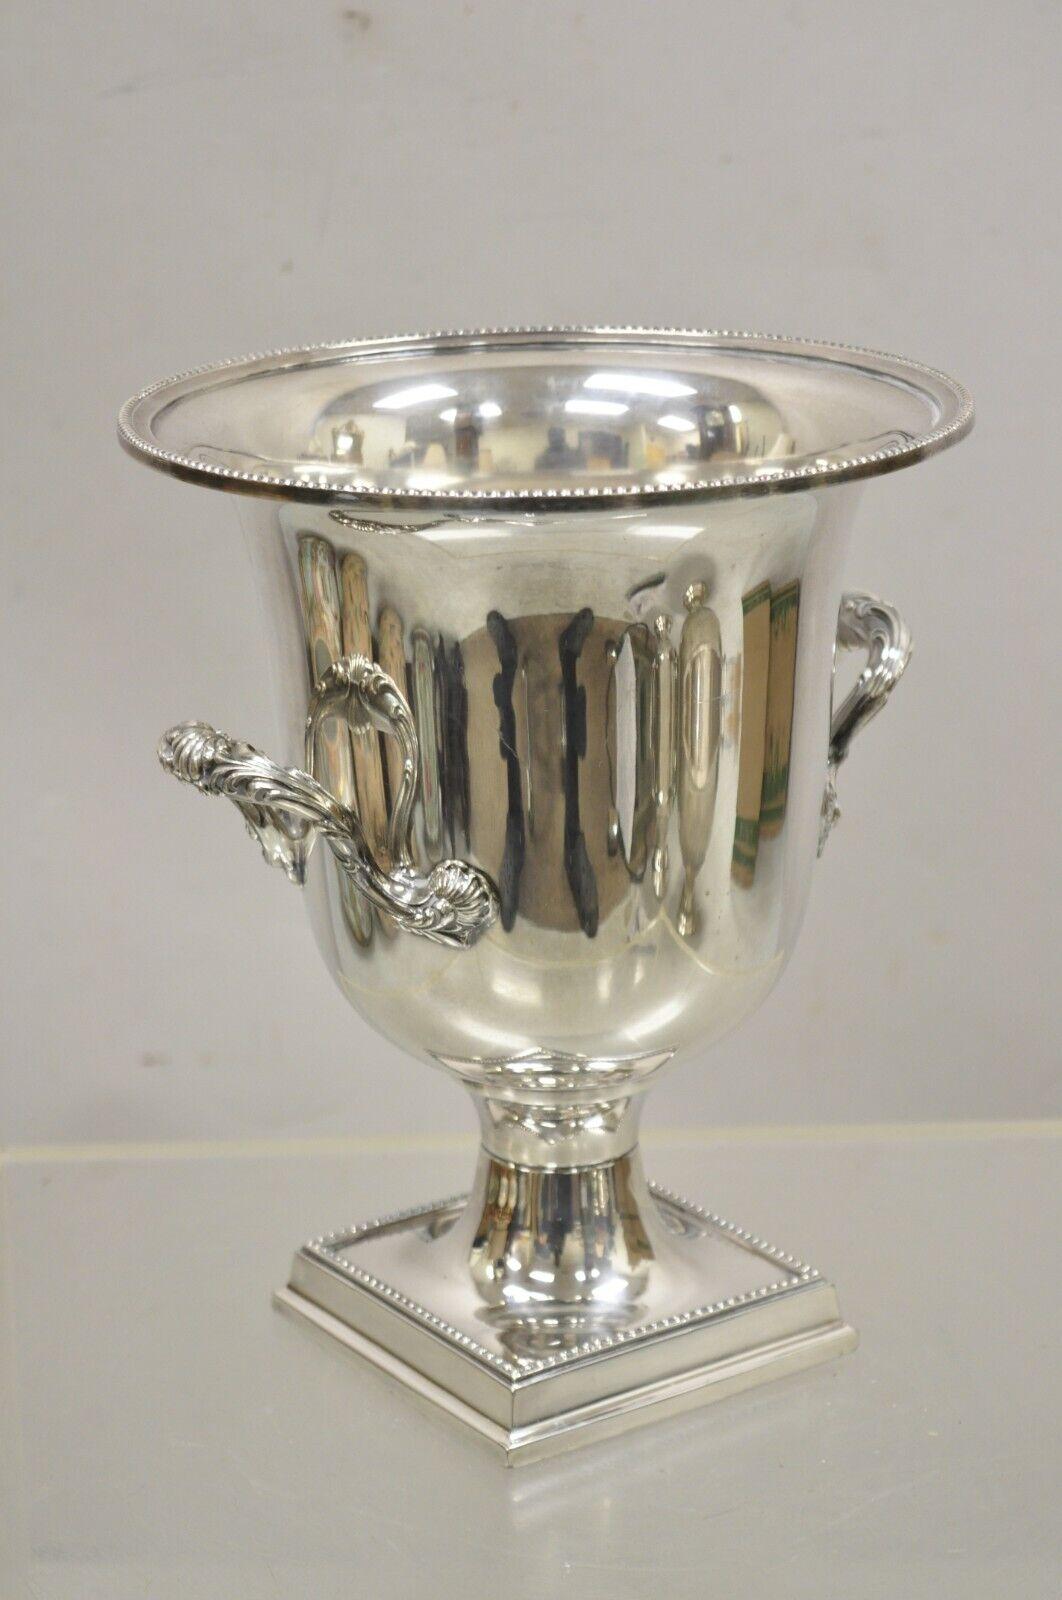 Vintage Gorham Silver Plated Trophy Cup Champagner Wein Chiller Ice Bucket. Der abgebildete Artikel ist ein schönes schweres Gewicht, abgestufter quadratischer Sockel, verzierte Doppelgriffe, Originalstempel, sehr schönes Vintage-Objekt, hochwertige